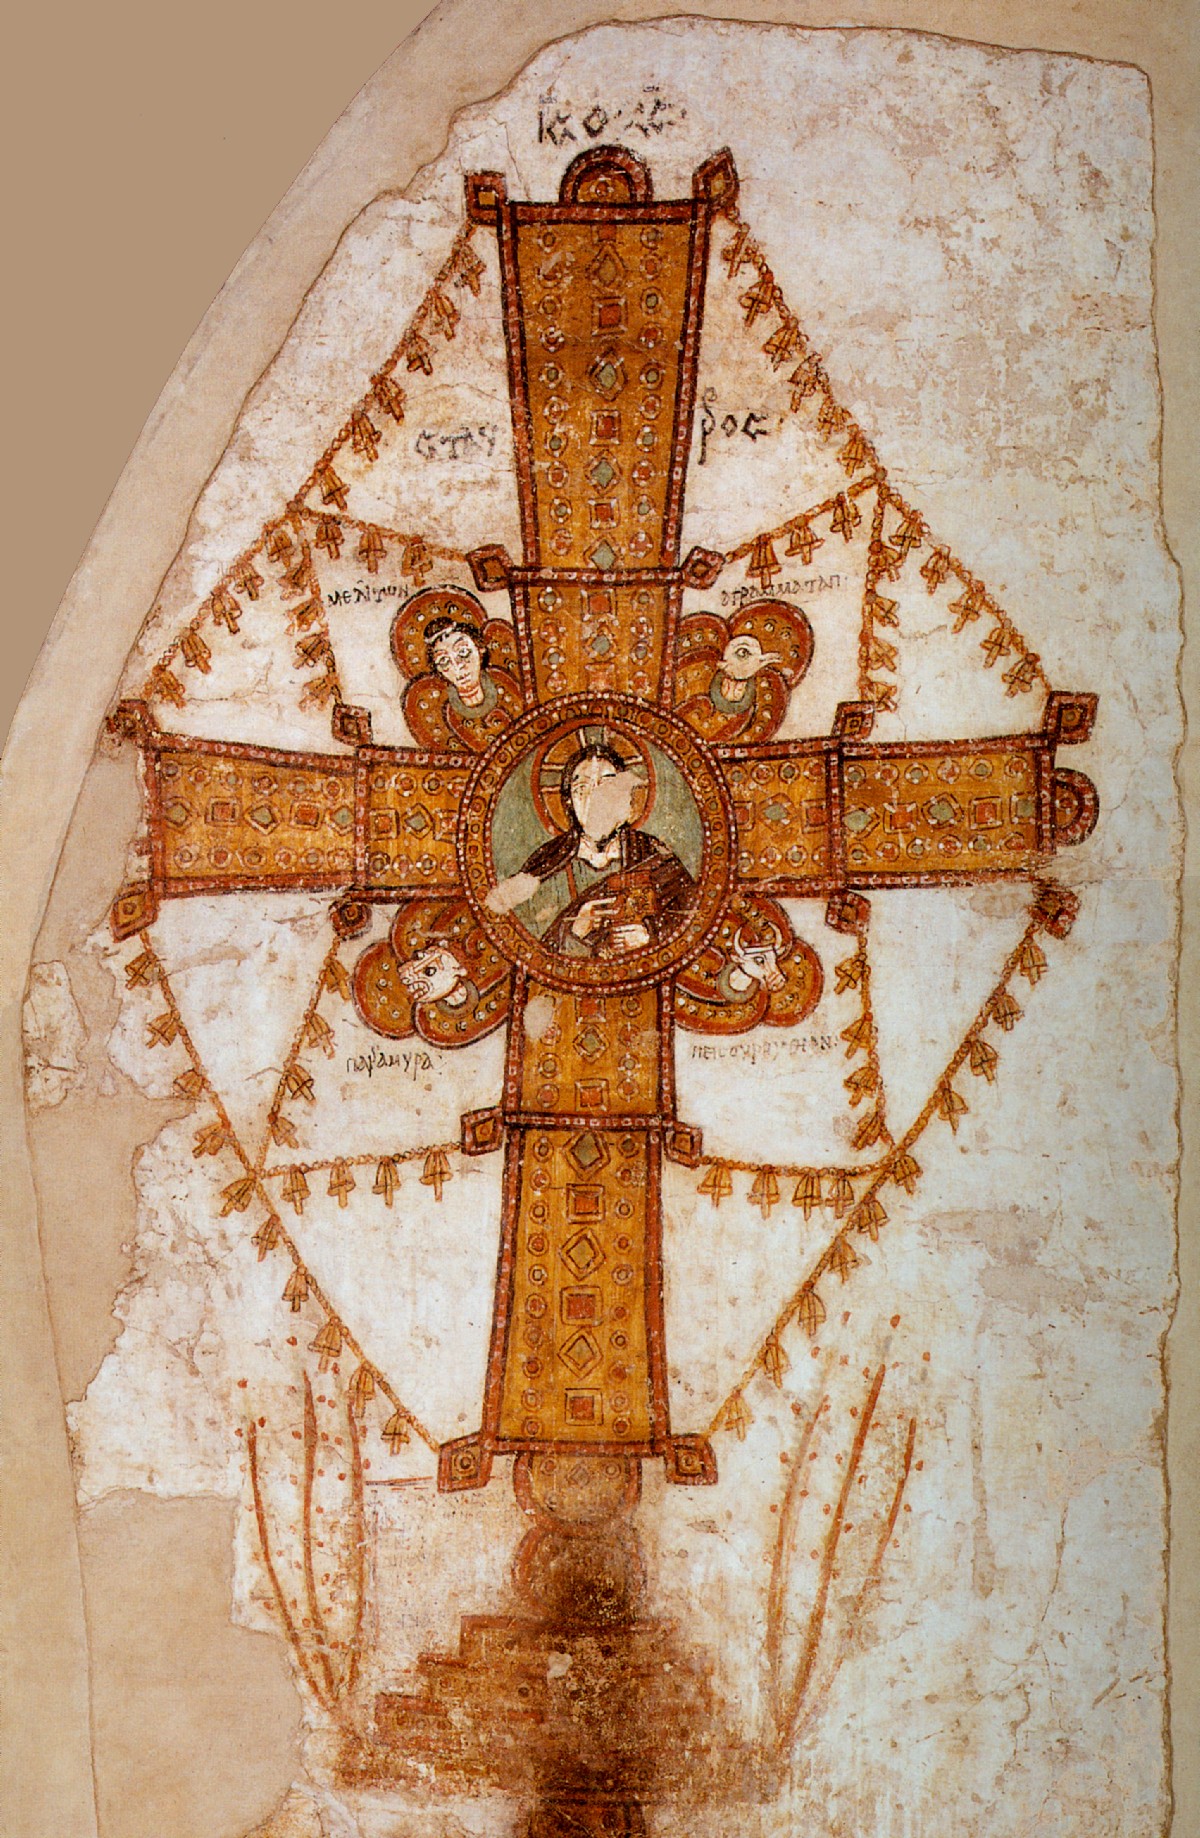 Das Kreuz von Faras, Tempera auf Putz, um 1000. Die Glöckchen bringen die Botschaft des Kreuzes zum Klingen. Wandmalerei in der berühmten Kathedrale im nubischen Faras